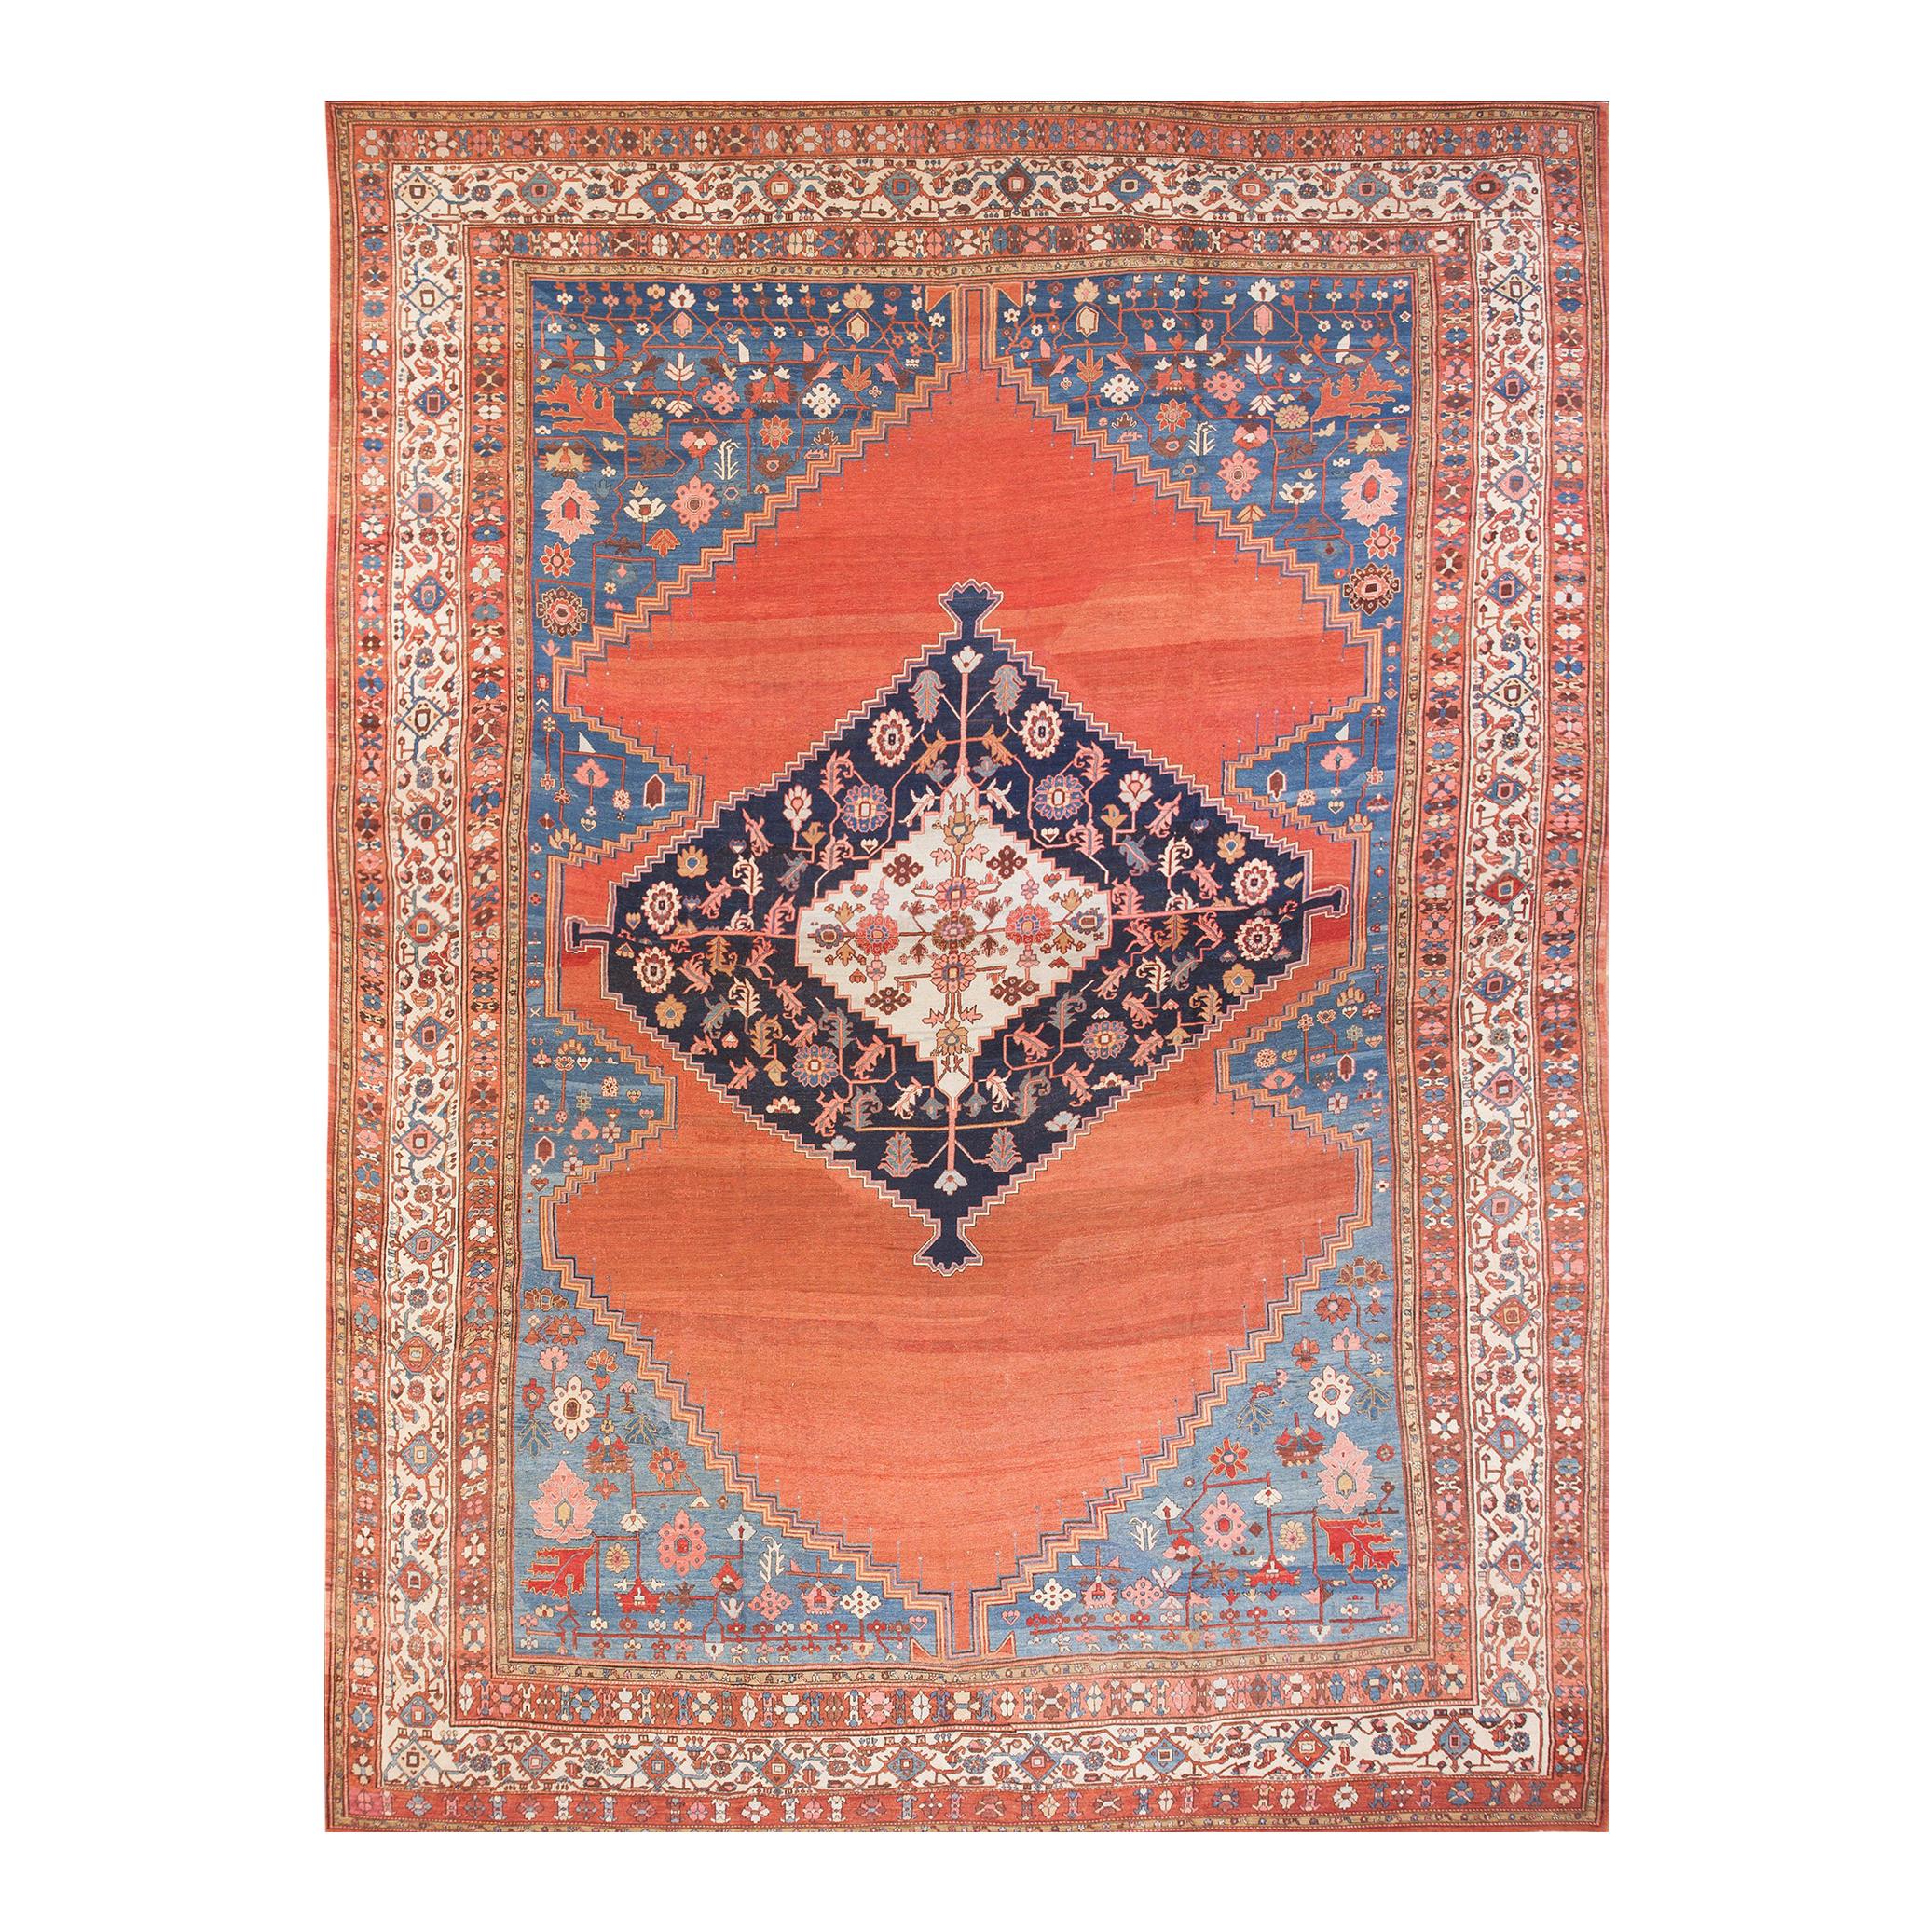 19. Jahrhundert N.W. Persisch  Bakshaiesh-Teppich ( 15'8" x 21' - 477 x 640)